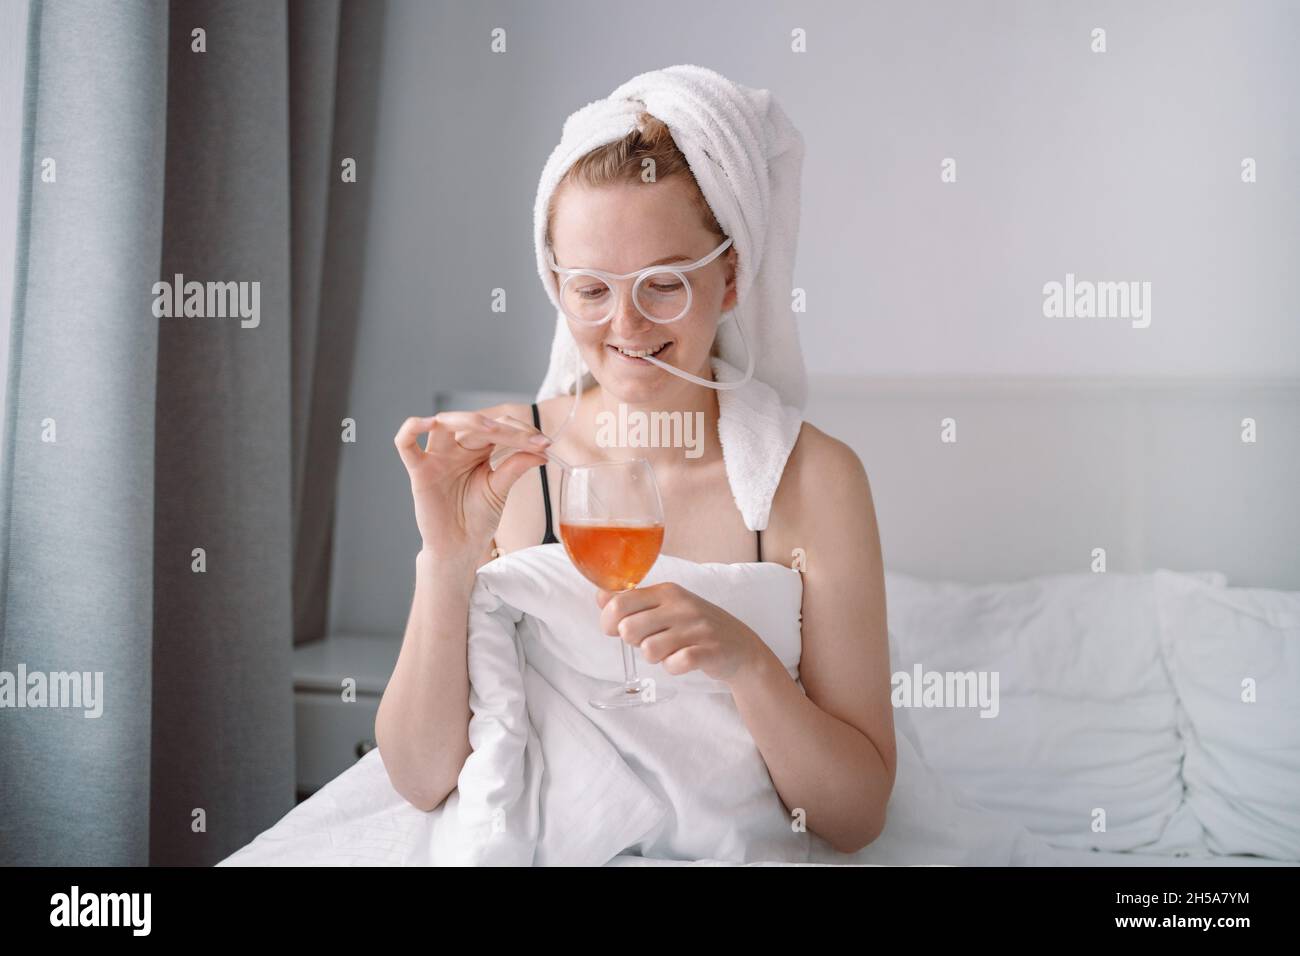 Glückliche Frau mit Handtuch auf dem Kopf liegt im Bett unter Decke isoliert über weißen Wand Hintergrund trinken Wein, haben einen Ventilator. Alkohol, Feiern und Trauern Stockfoto